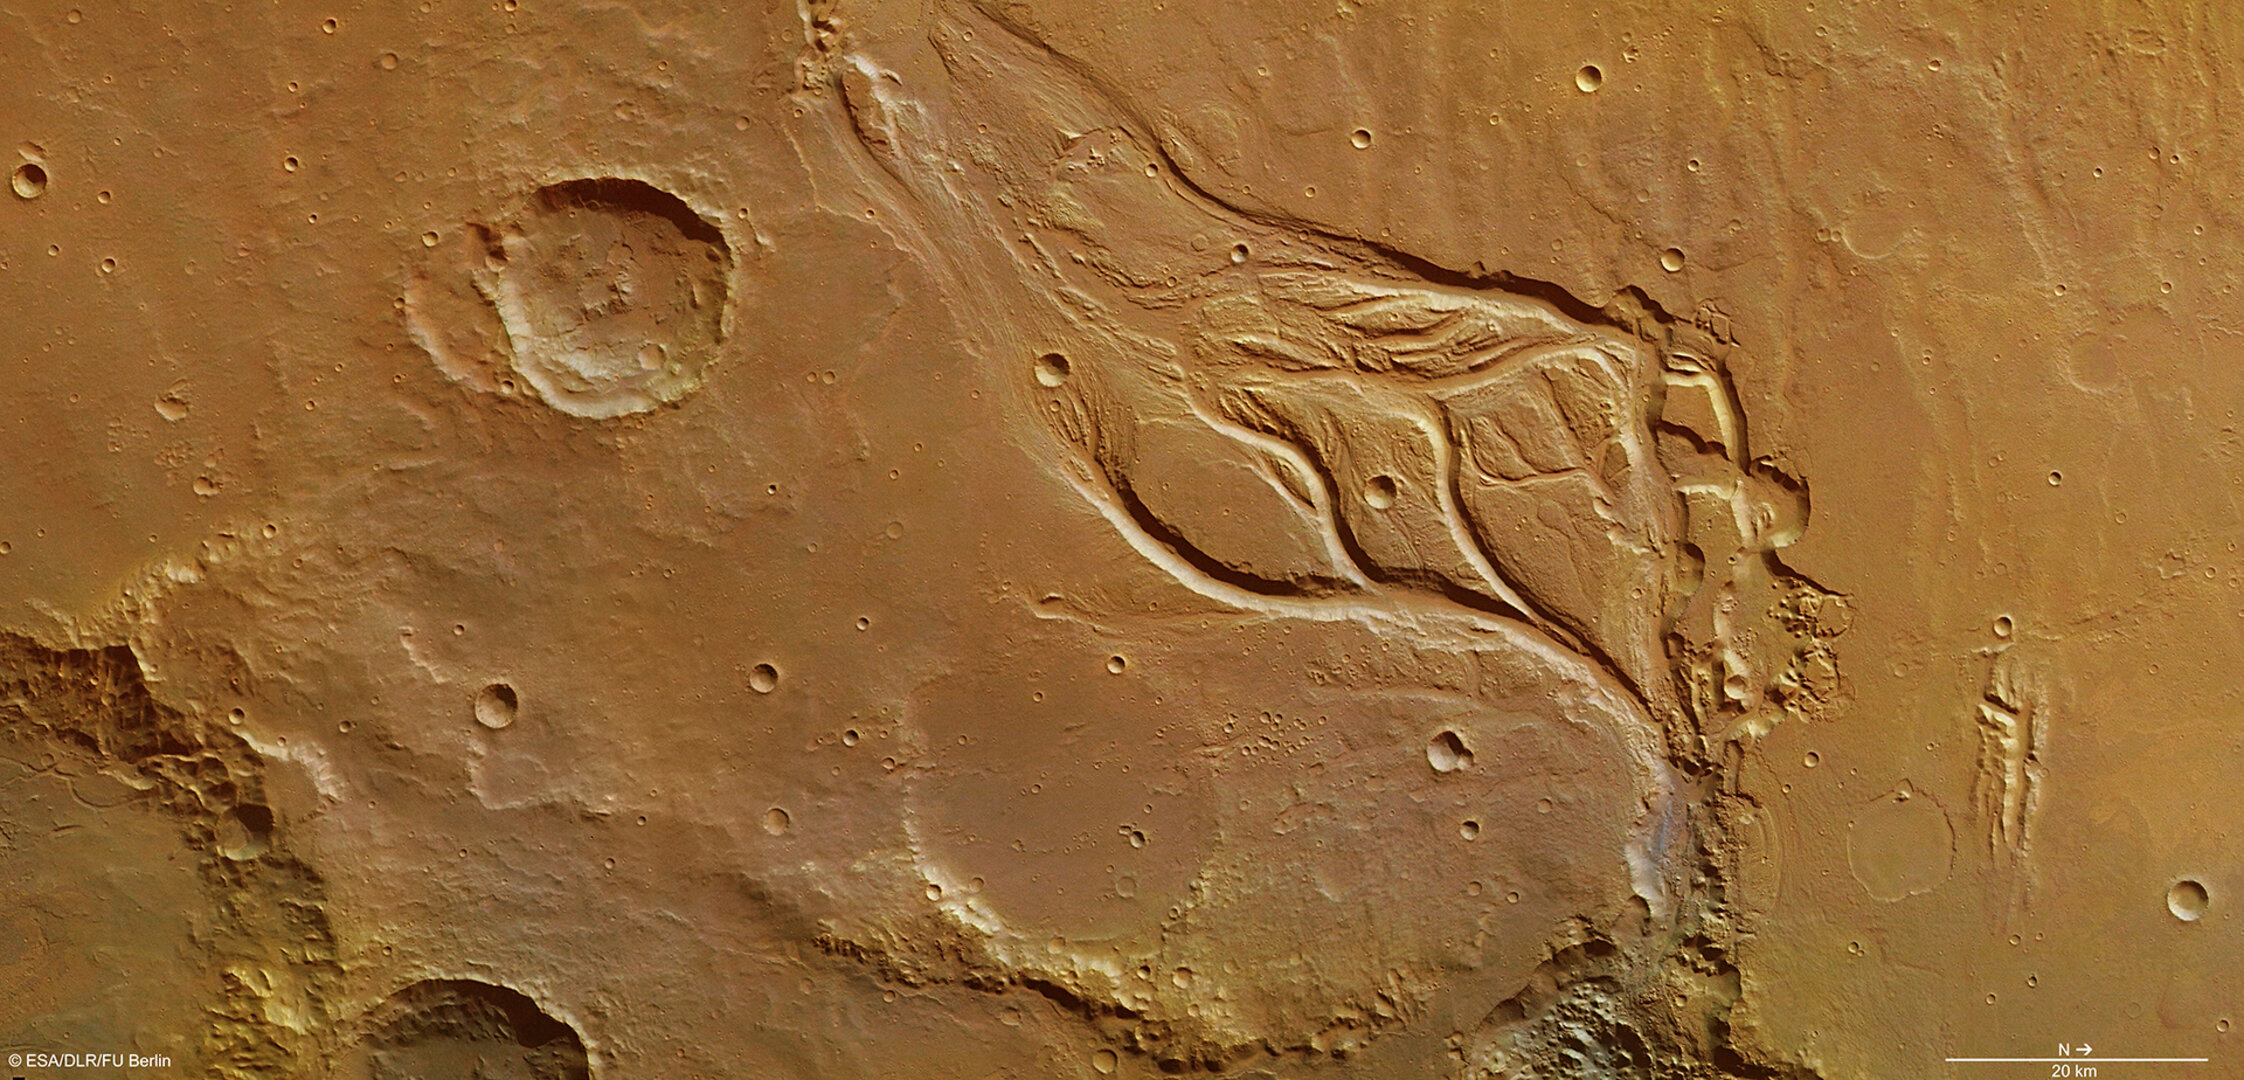 Fig. 2. Part central d'Osuga Valles al planeta Mart. Hom creu que inundacions catastròfiques van crear aquesta regió, molt erosionada, que mostra illes hidrodinàmiques i un sòl acanalat tallats per aigua que fluïa ràpidament (cap a la part inferior dreta de la imatge). Crèdits: ESA.